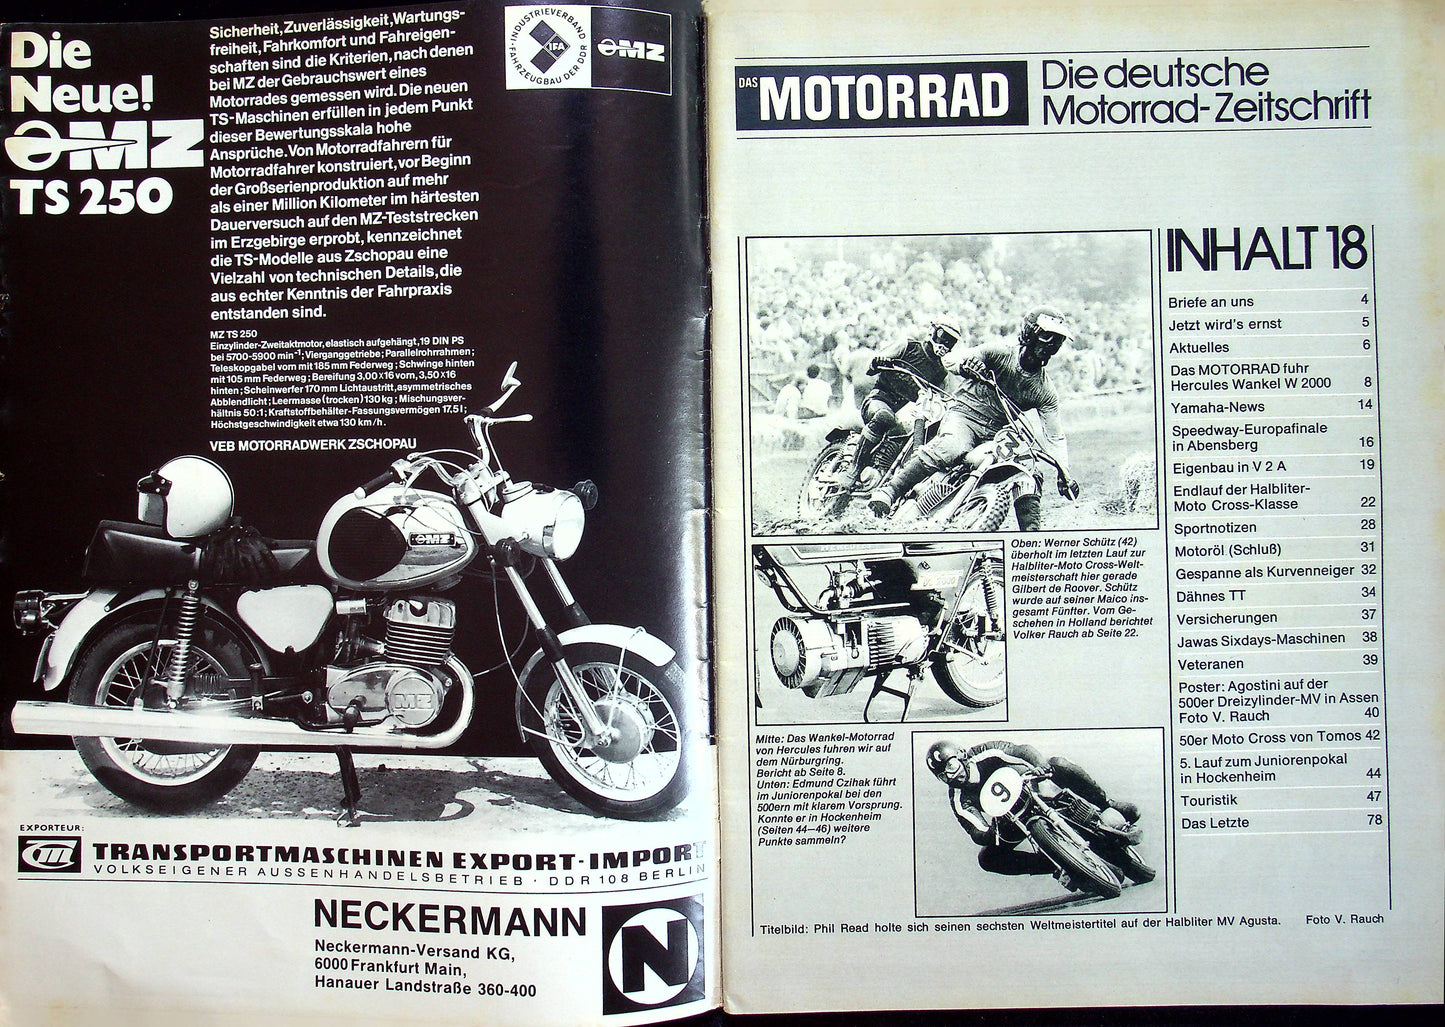 Motorrad 18/1973